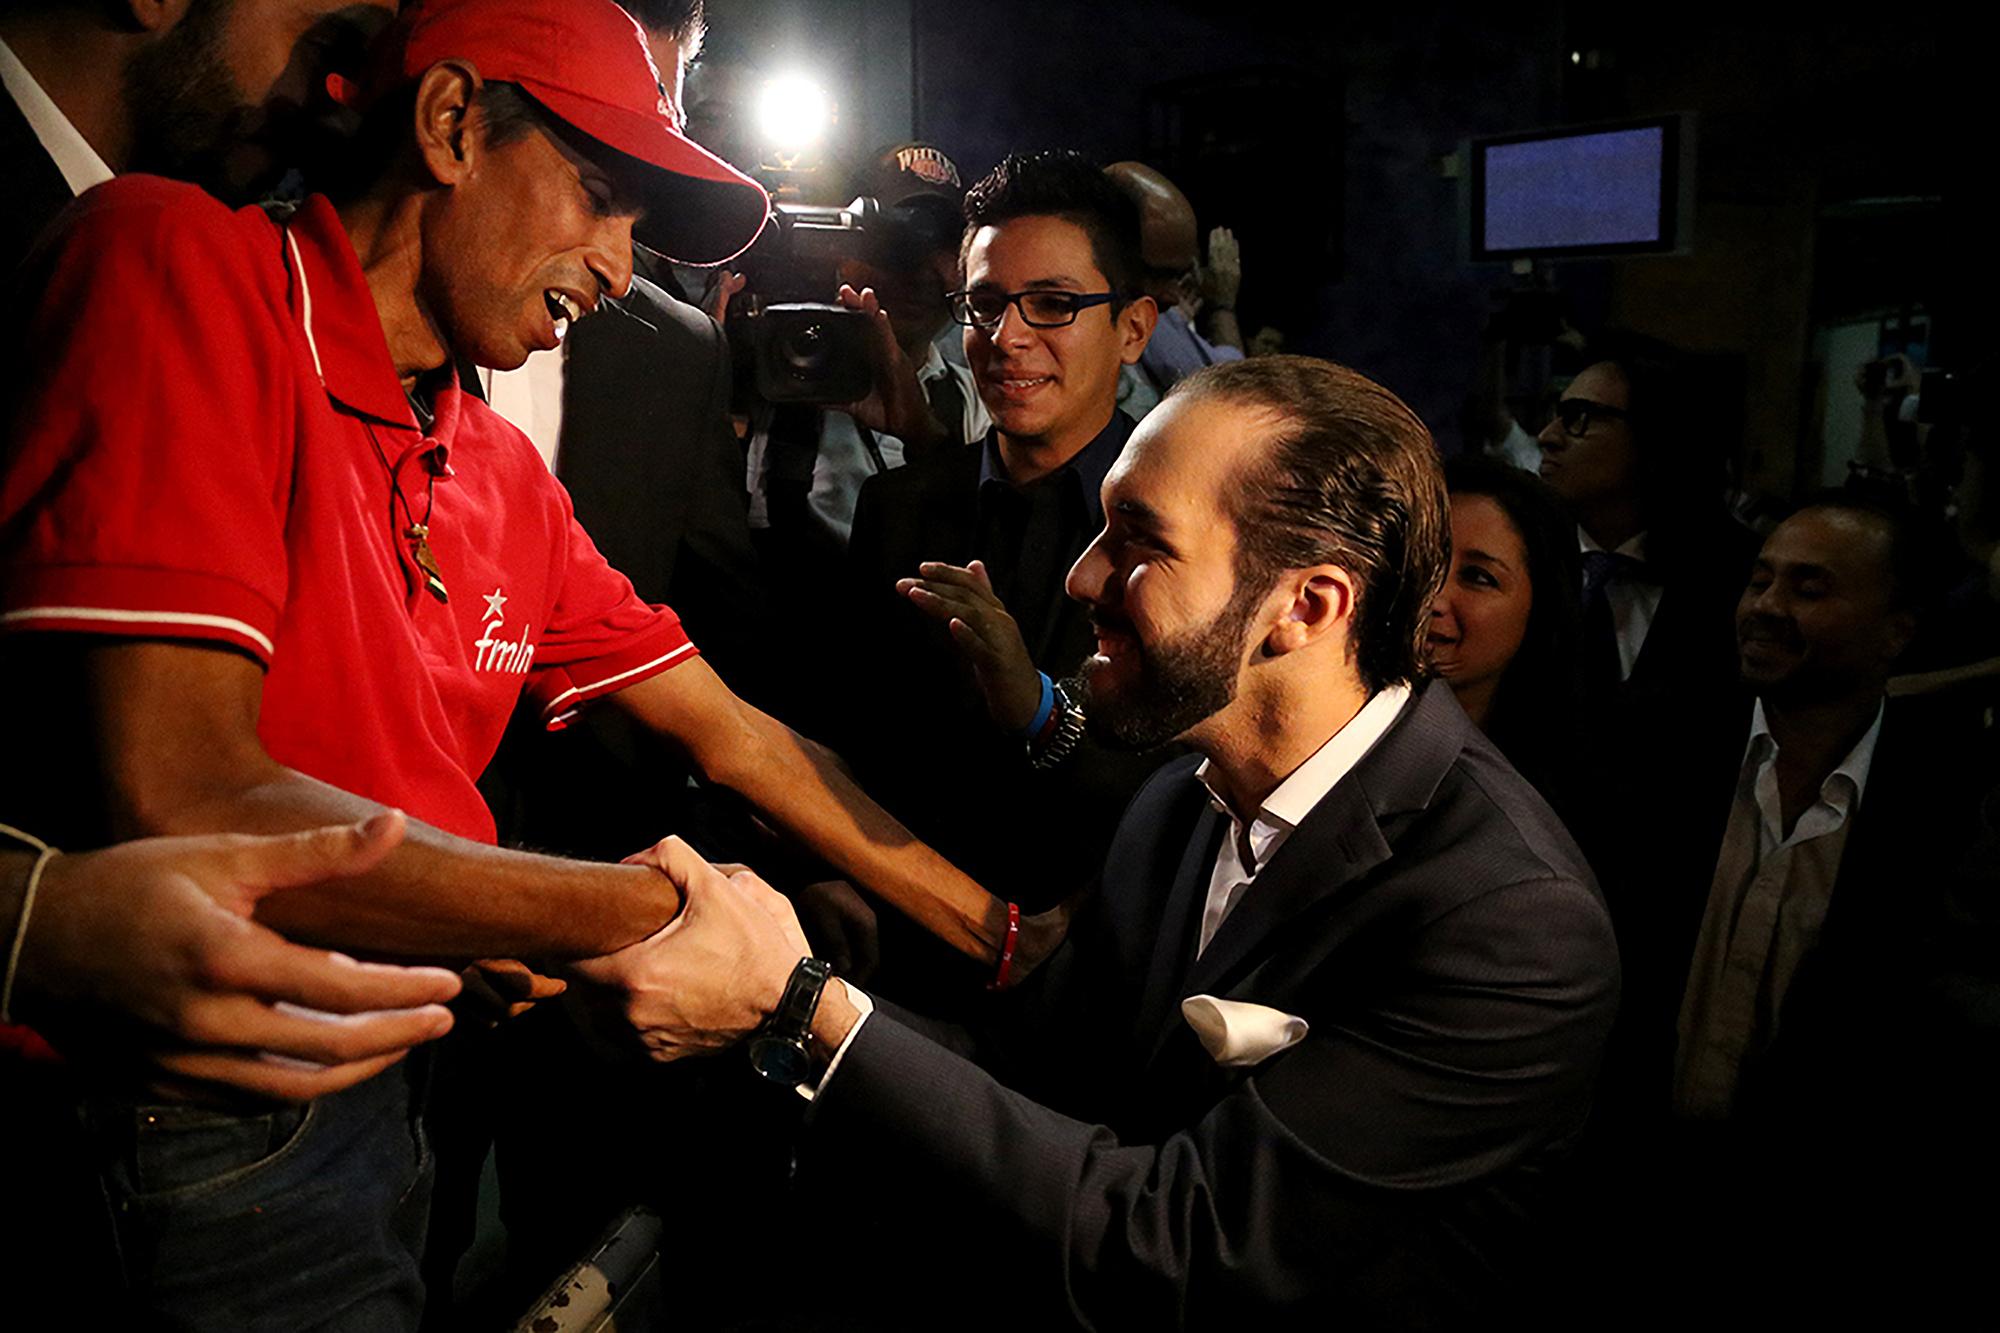 Bukele, candidato del FMLN para disputar la alcaldía de San Salvador, saluda a un militante del partido al finalizar un debate electoral televisado, el 27 de enero de 2015. Foto de El Faro: Fred Ramos.